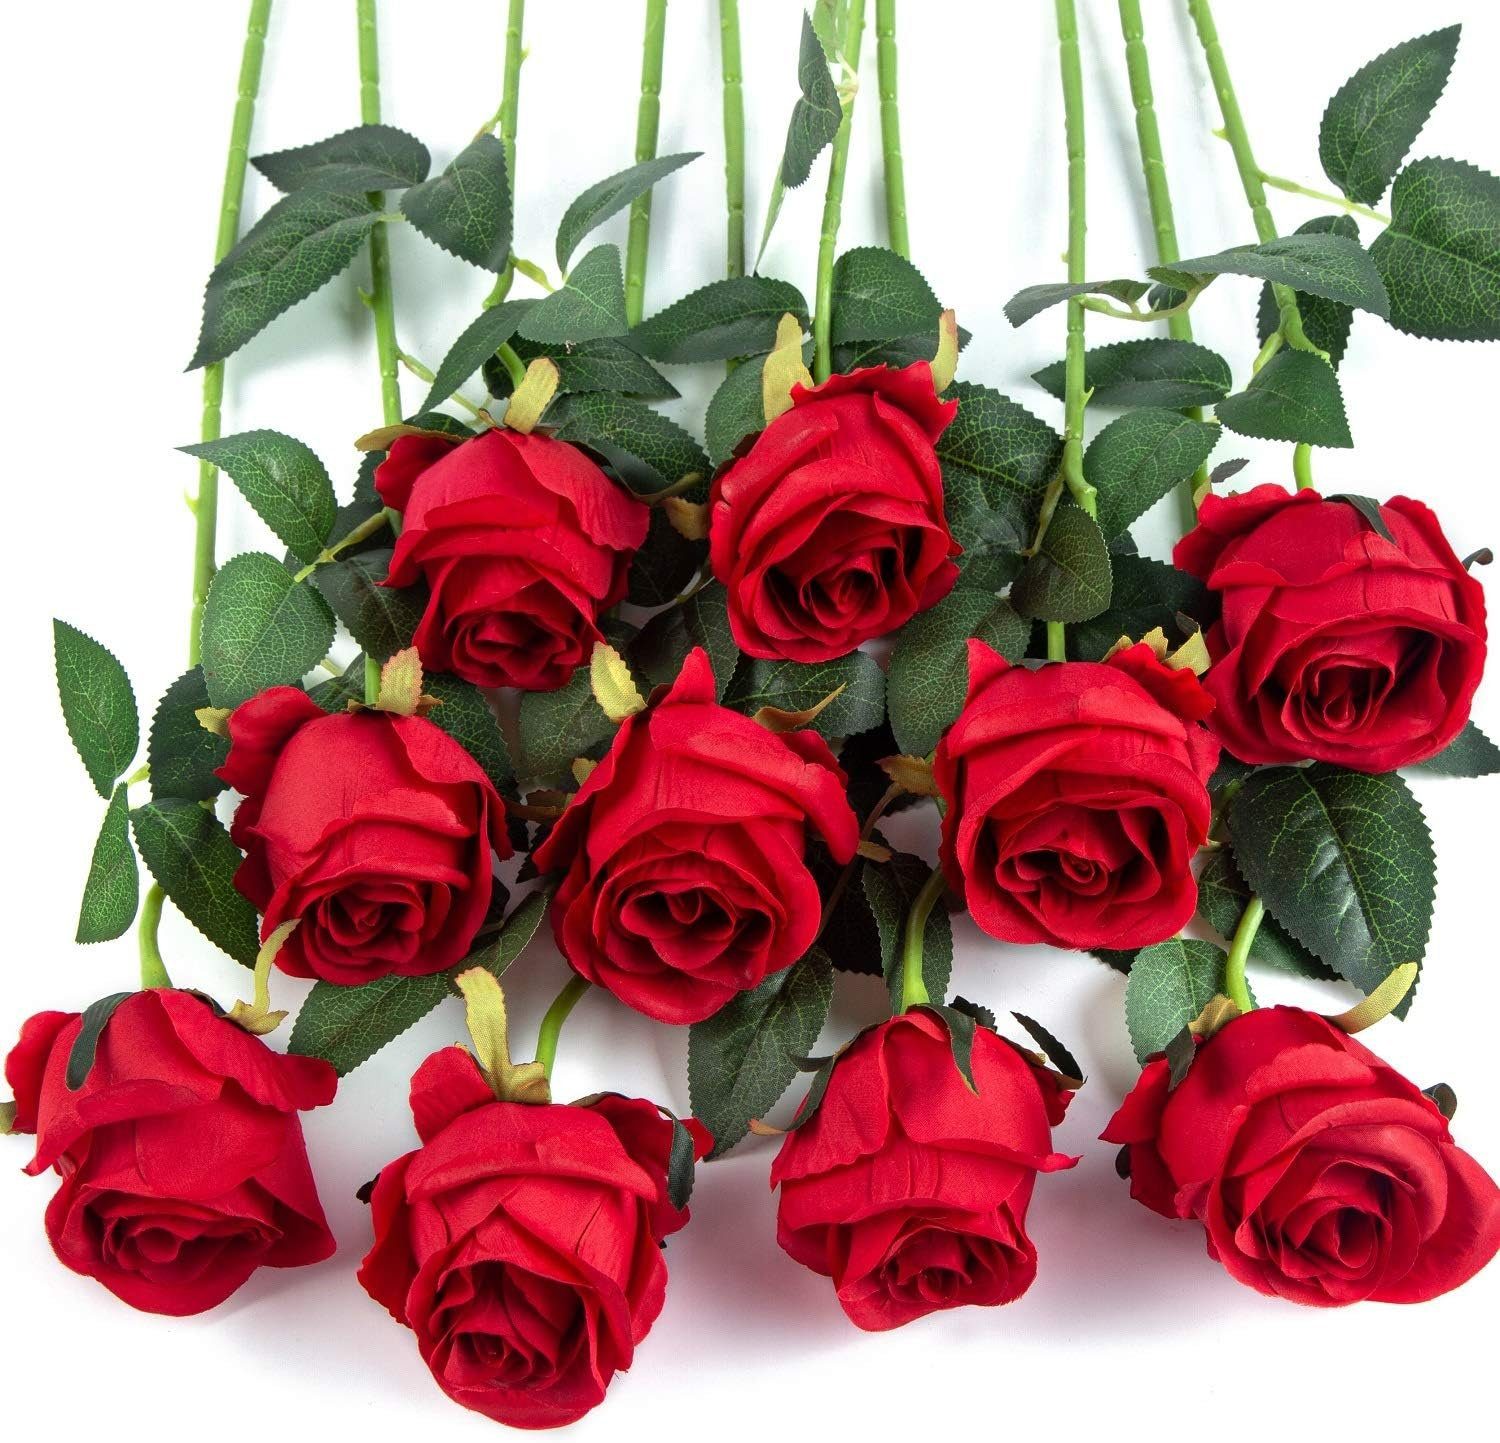 Kunstblume 10pcs Künstliche Rose Blumen Langer Stiel Gefälschte Seidenrosen, Mutoy, für DIY Hochzeitsstrauß Tisch Herzstück Wohnkultur Party Dekor Rot